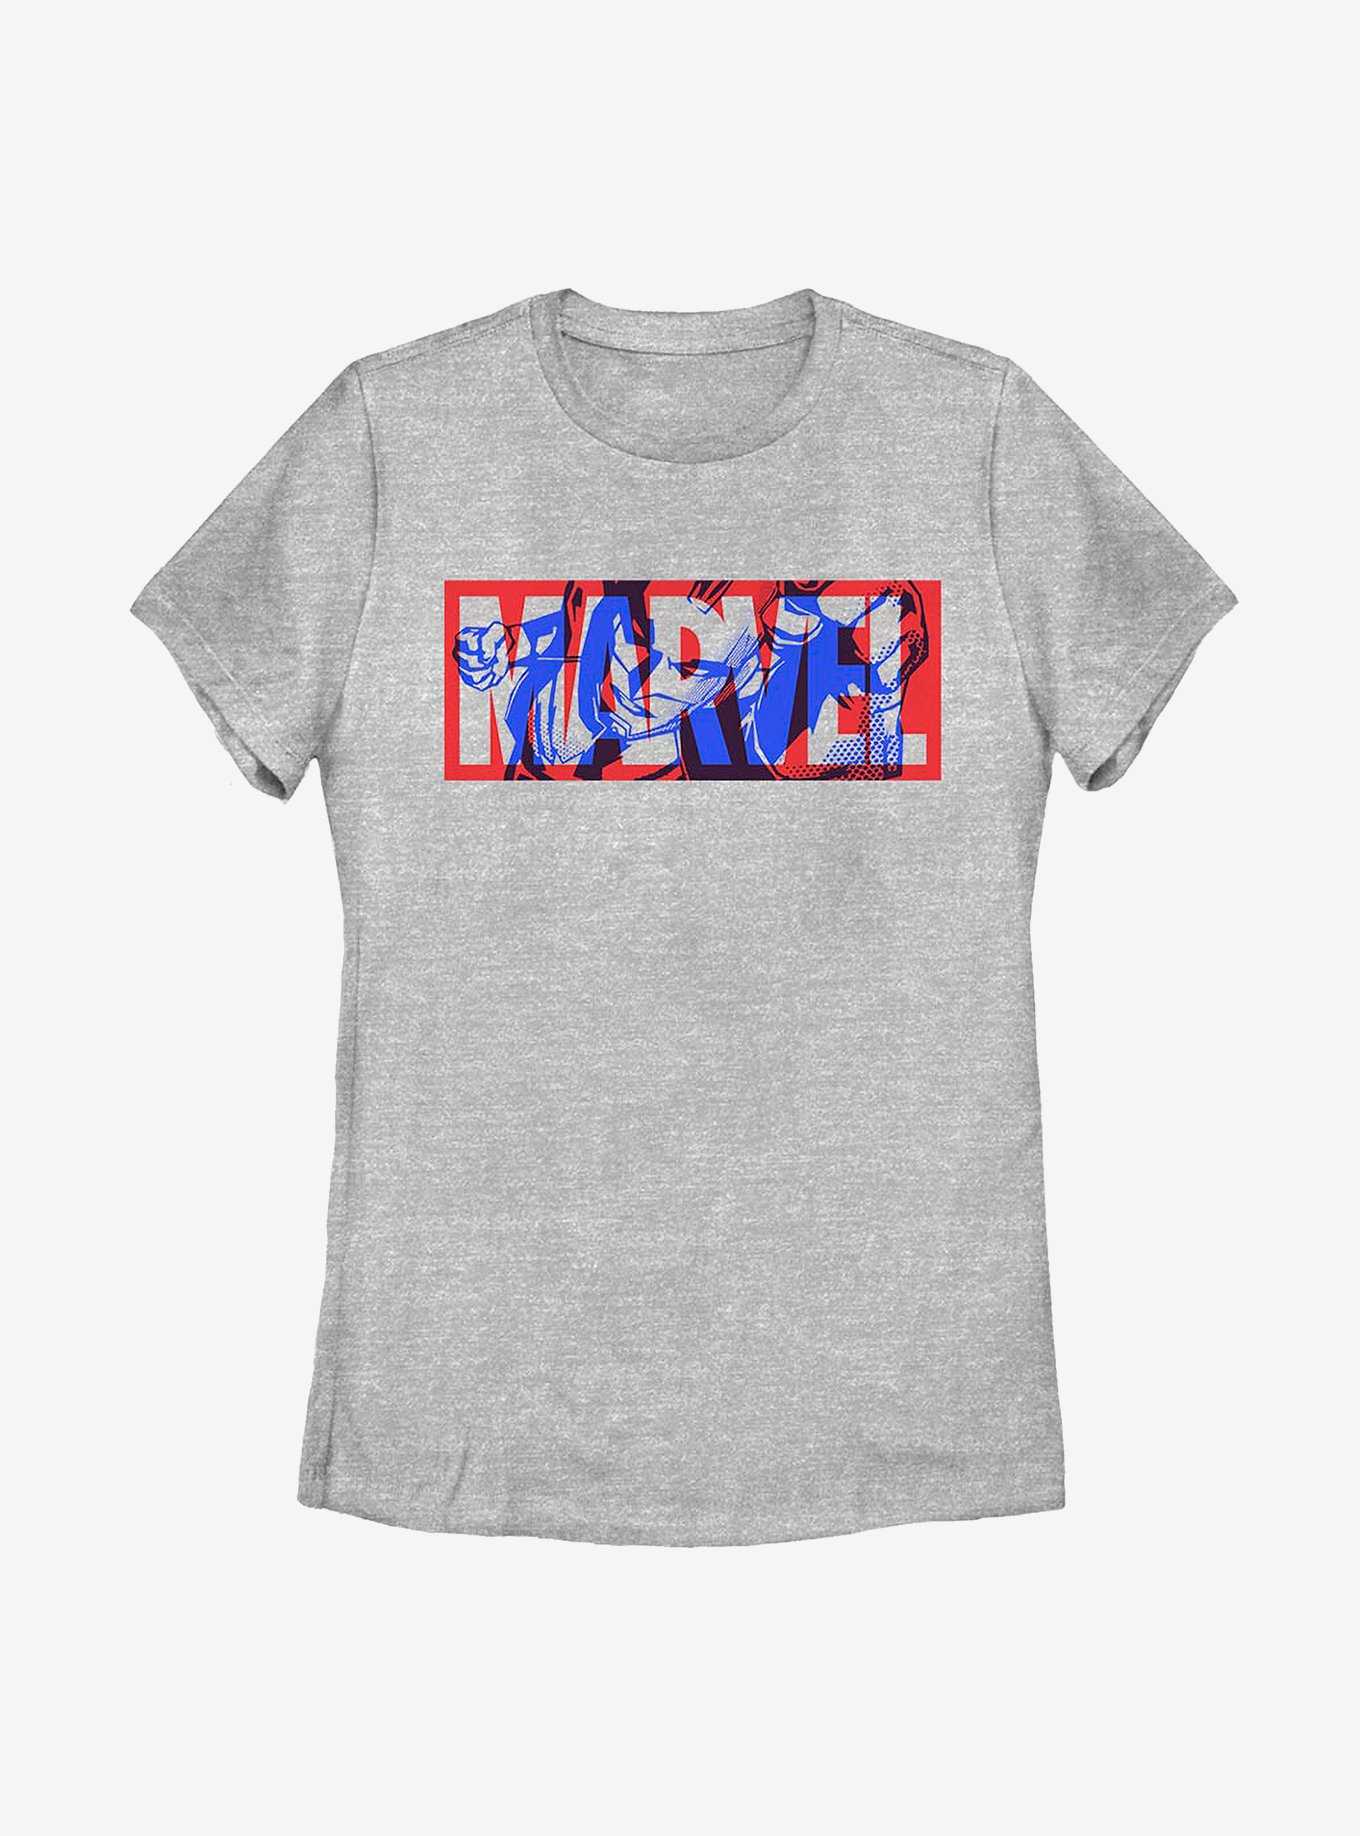 Marvel Captain Marvel Danver's Logo Womens T-Shirt, , hi-res